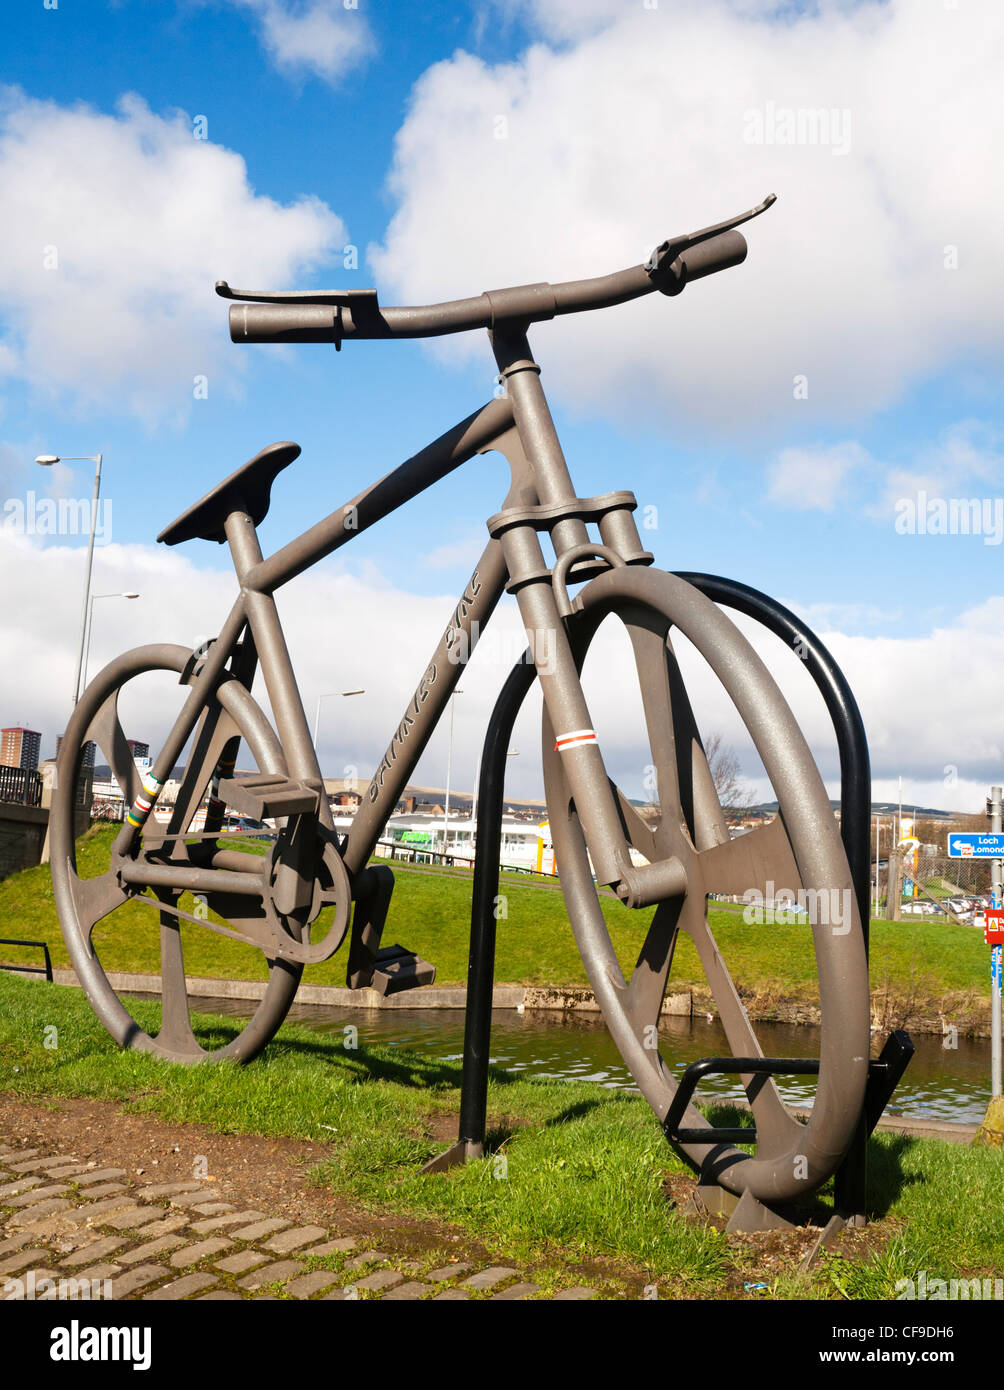 Gigantische Statue benannt das Bankies Bike, entworfen von dem Künstler John Crosby, Clydebank, Schottland. Stockfoto